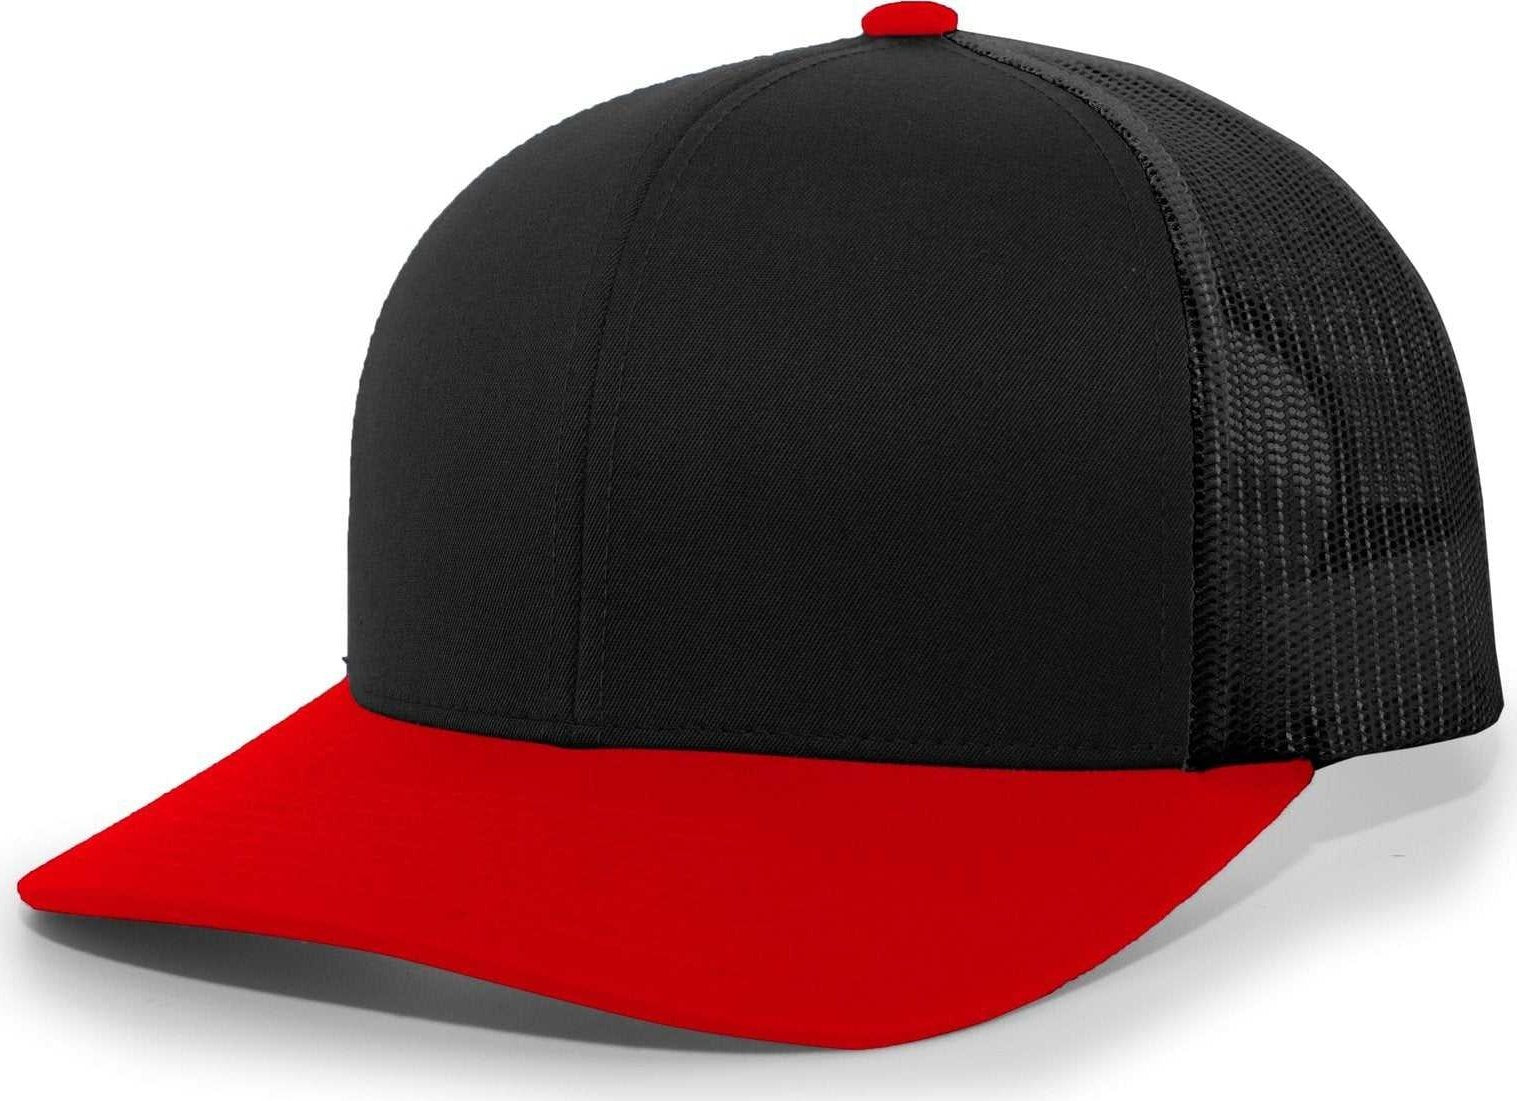 Pacific Headwear 104C Trucker Snapback Cap - Black Red - HIT a Double